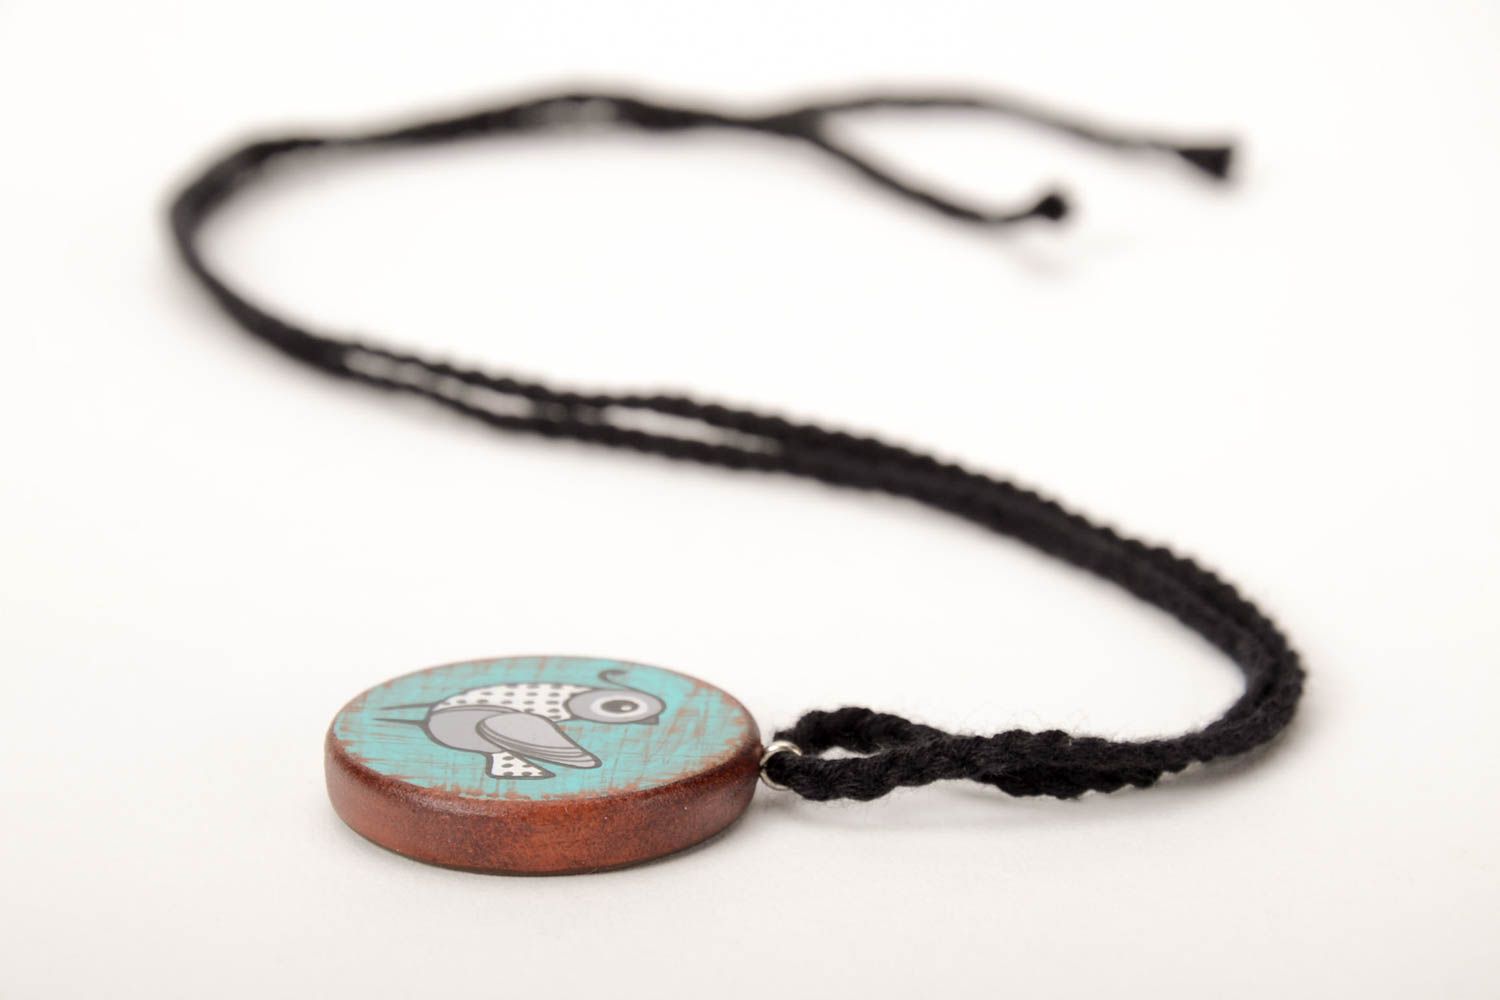 Handmade pendant designer pendant unusual gift wooden accessory gift for girl photo 3